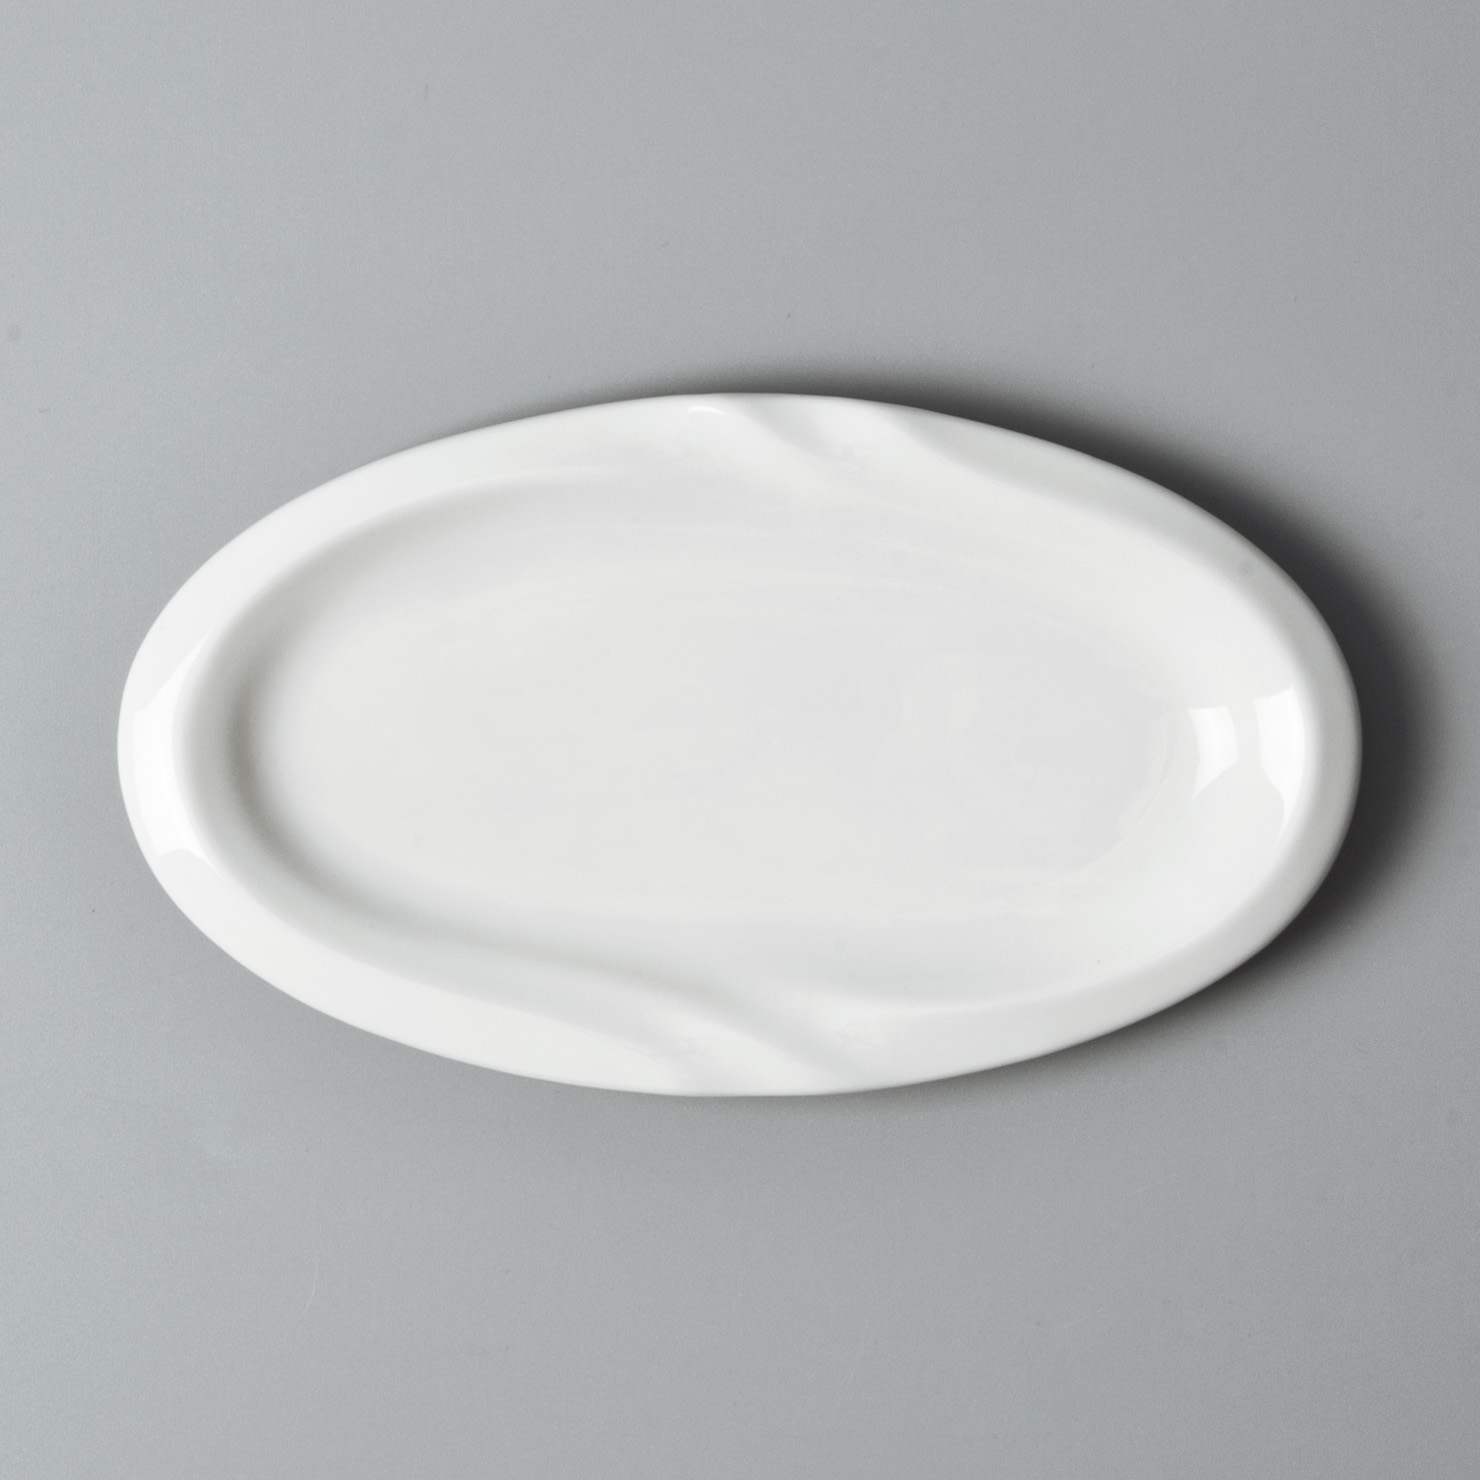 sample fine ceramic dinnerware stock for dinning room Two Eight-8